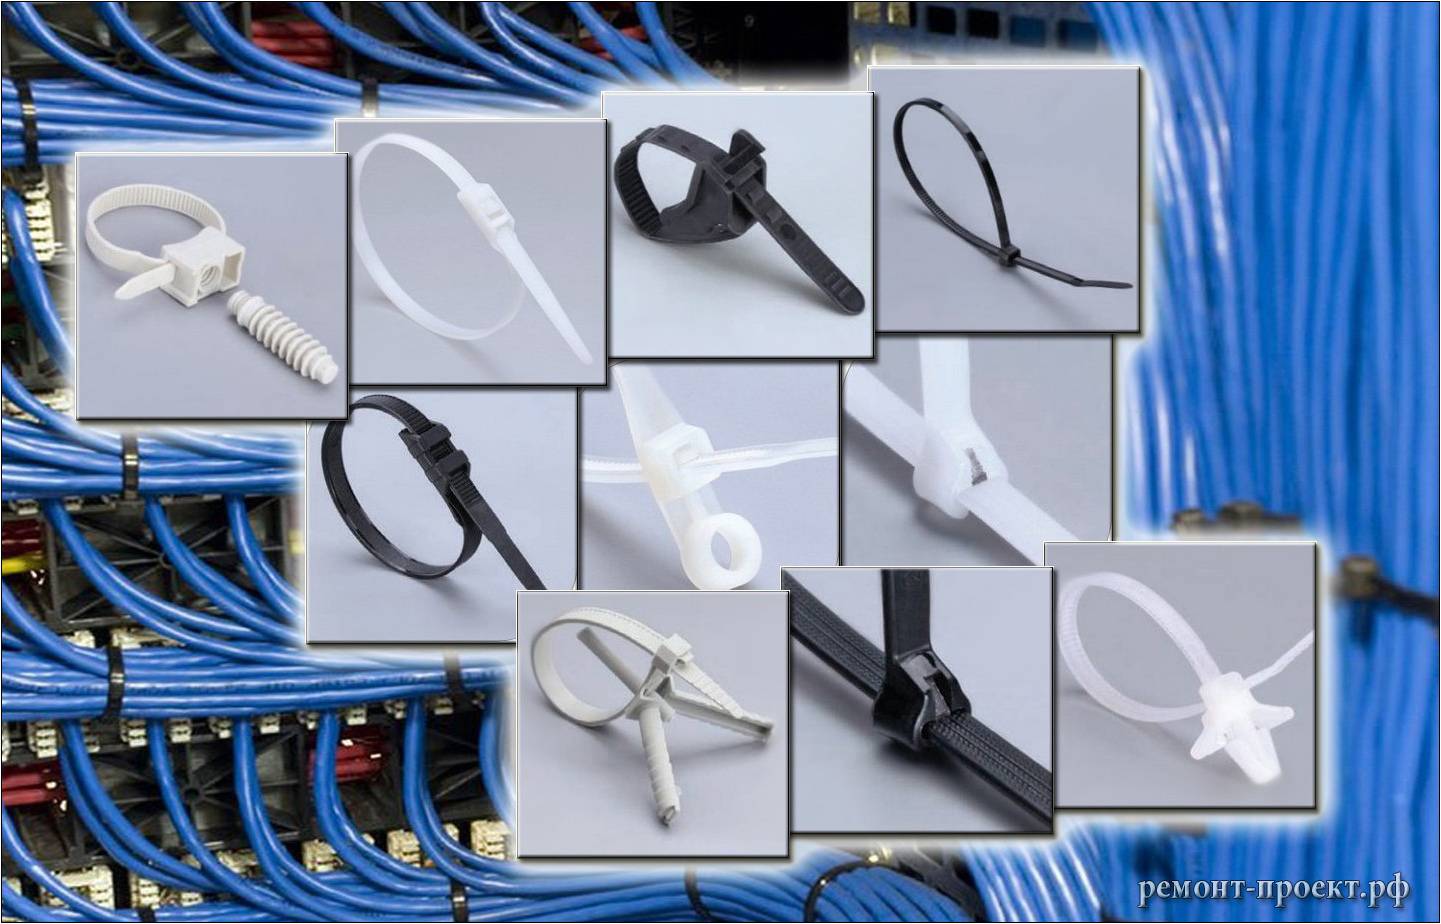 Прокладка кабеля в полу: особенности работ, основные преимущества и недостатки